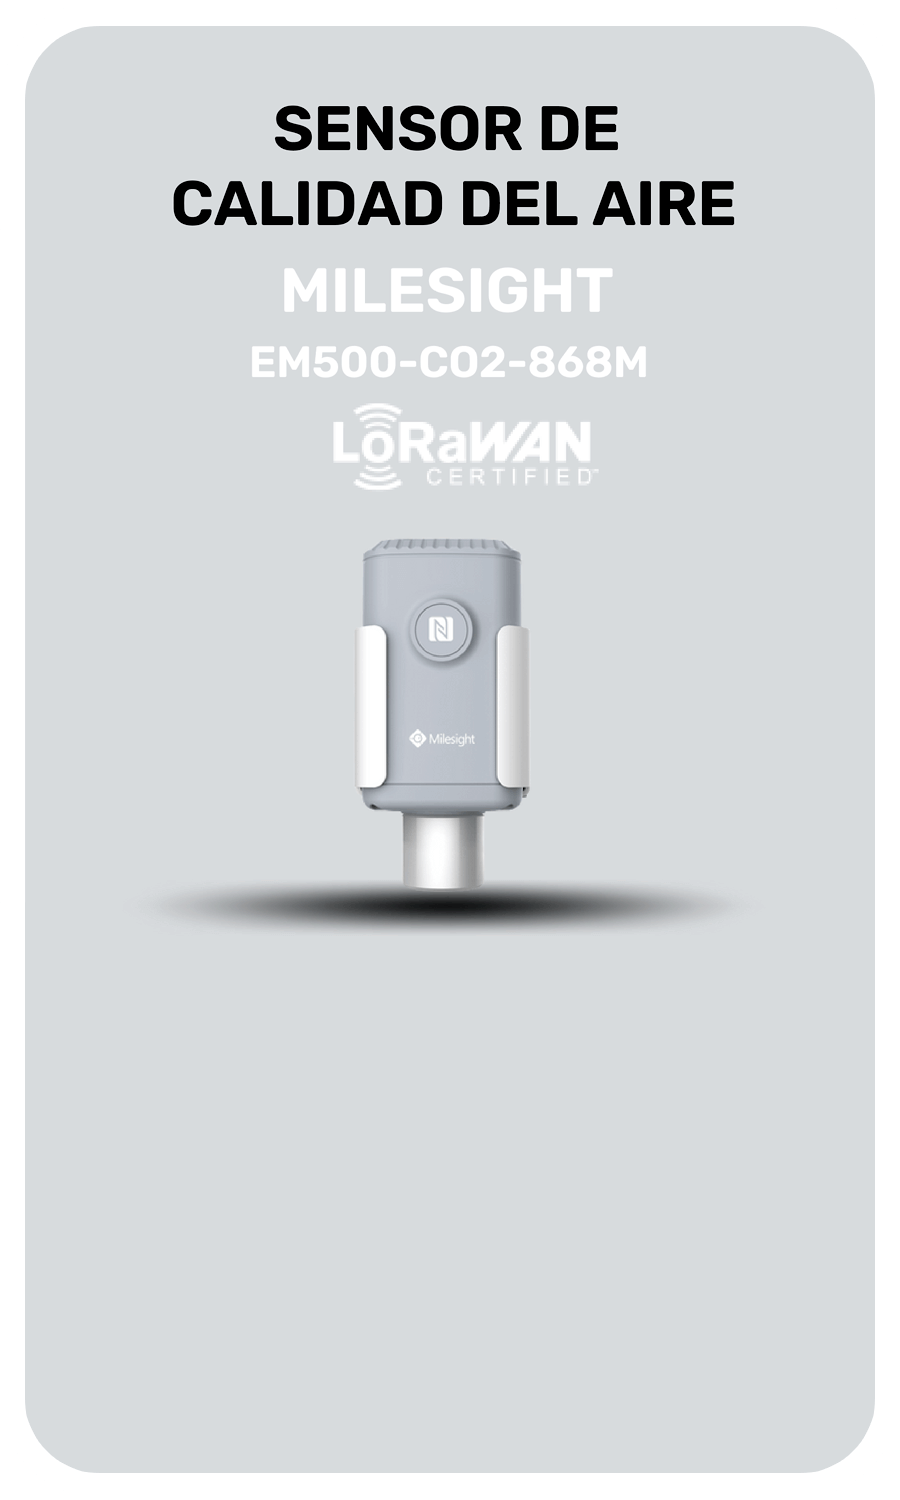 Milesight EM500-CO2-868M LoRaWAN CO2 y sensor de calidad del aire